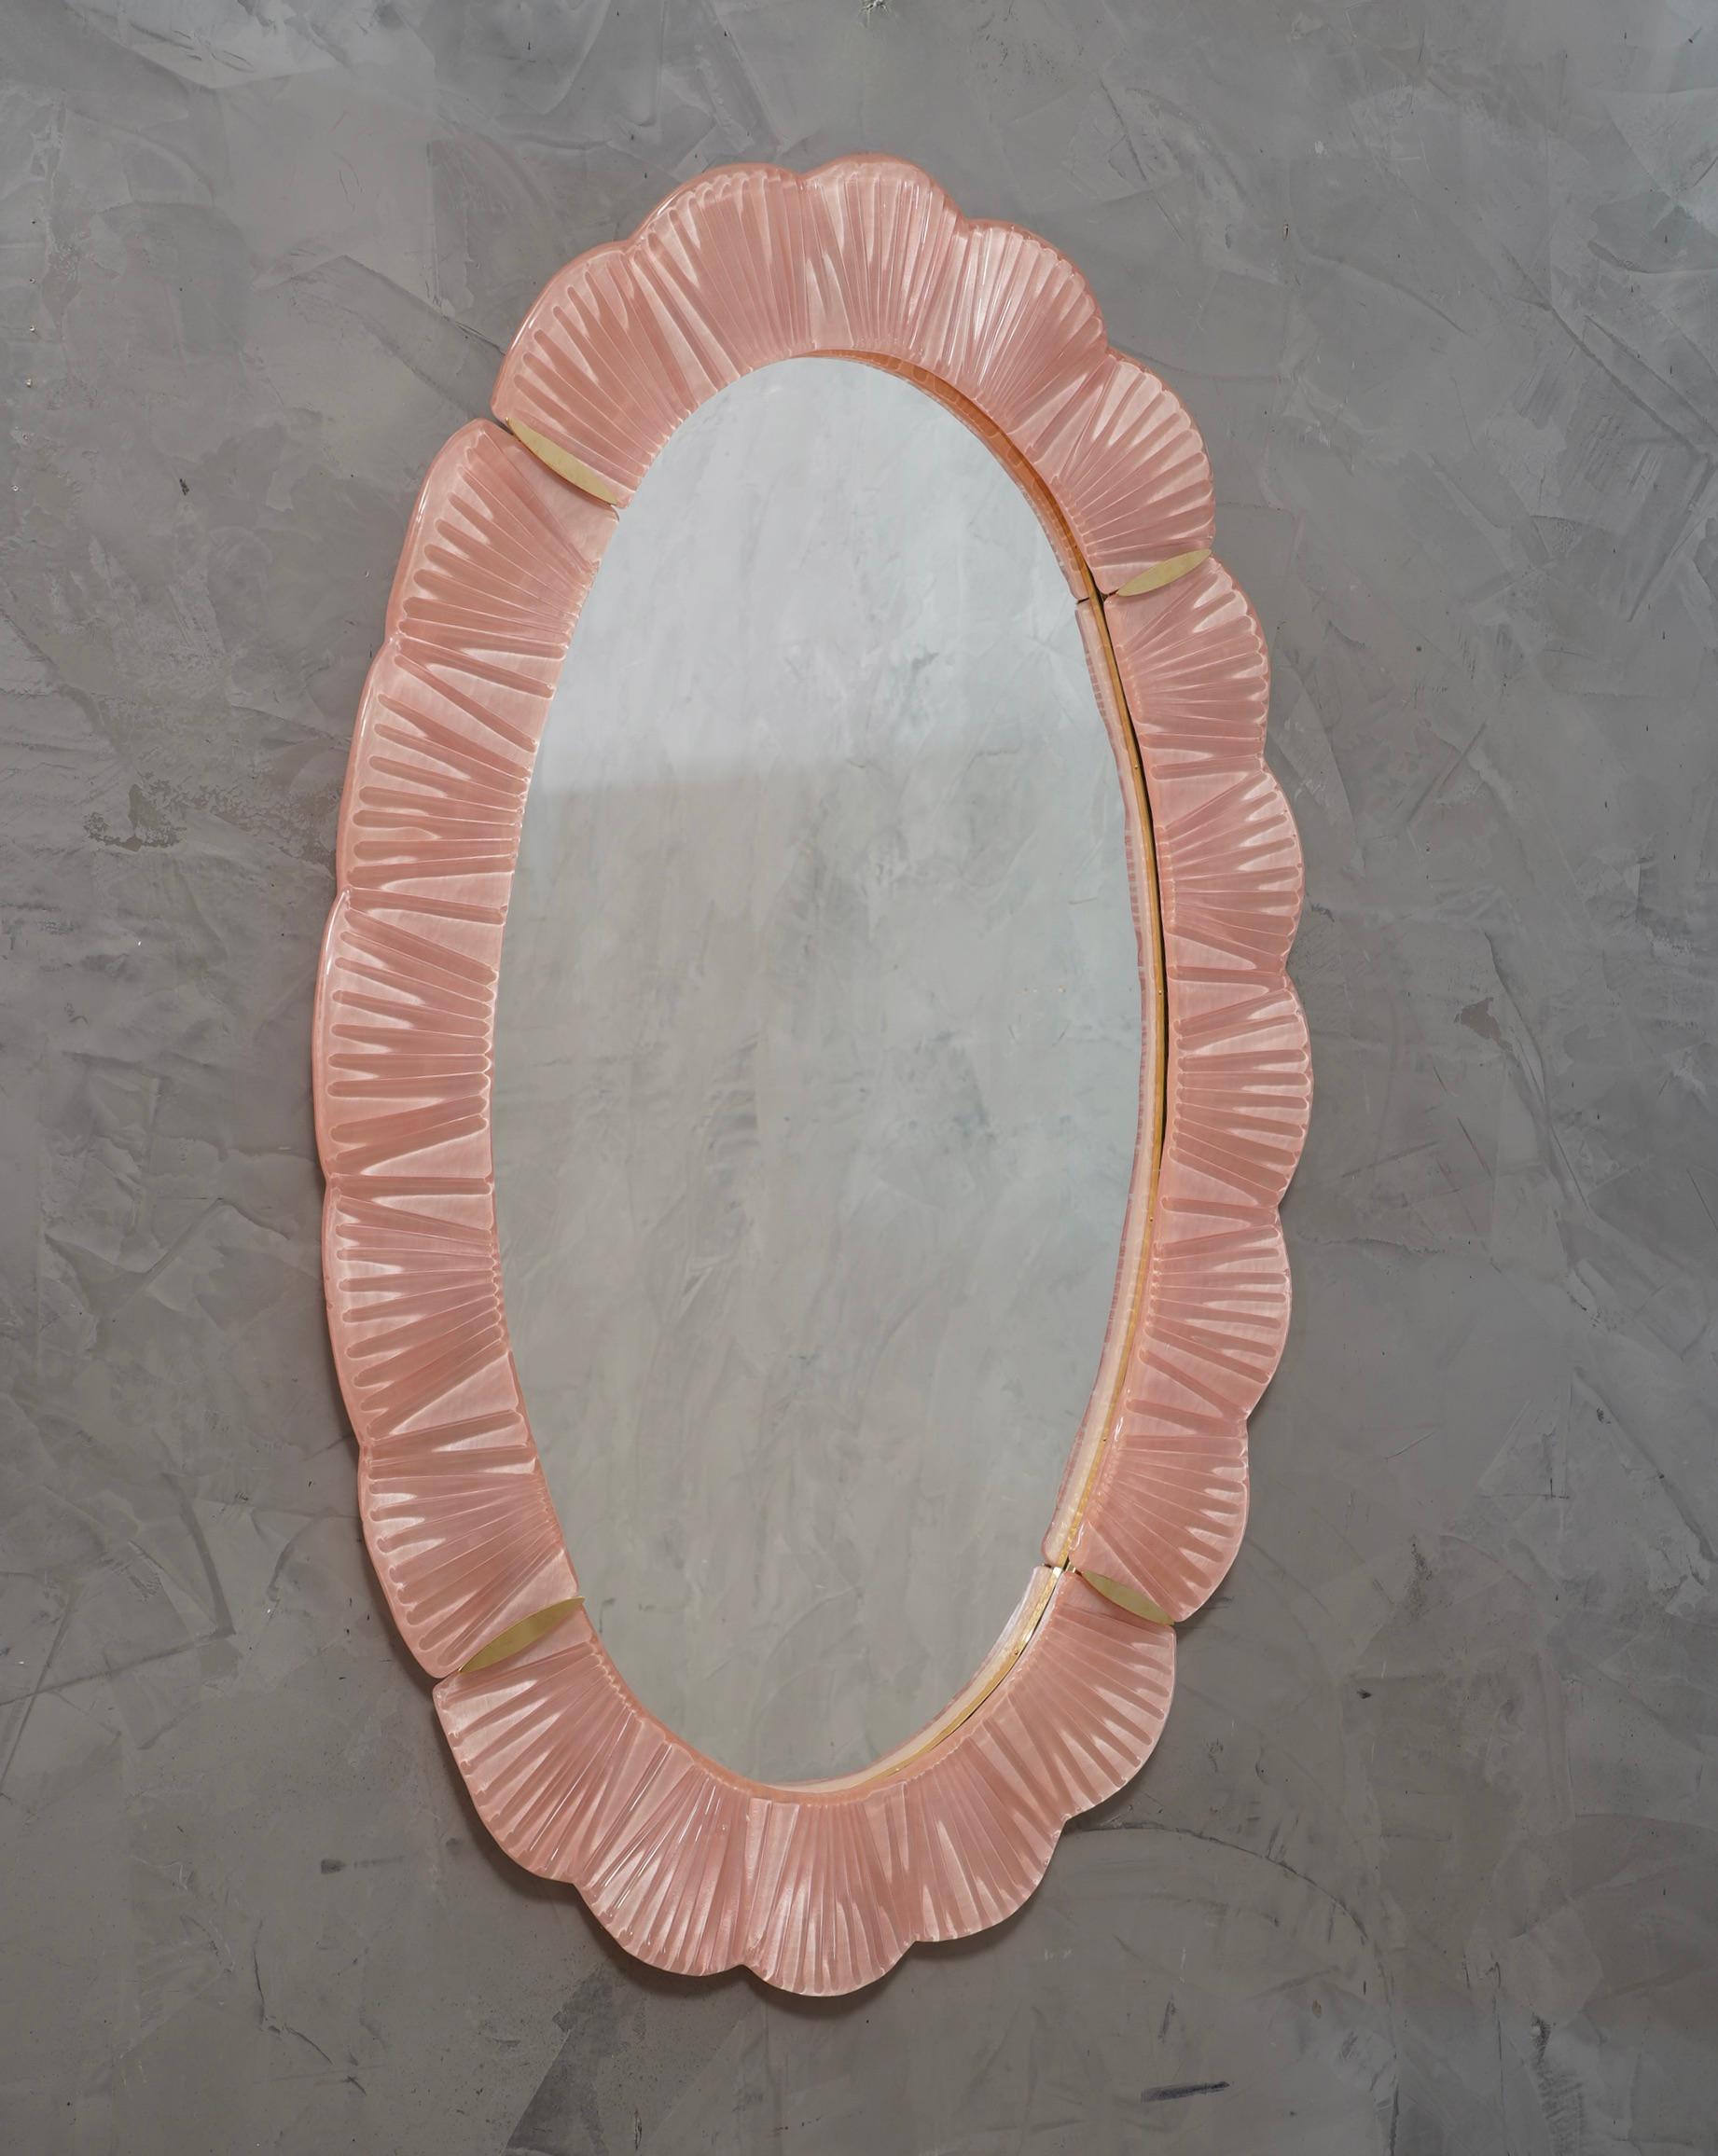 Atemberaubende Spiegel in leuchtend rosa Farbe Murano-Glas, Venedig. Ein Spiegel, der allein Ihr Zuhause einrichtet.

Der Spiegel hat eine Rückwand aus Holz, auf der vier Murano-Glasscheiben montiert sind, die wie auf dem Foto ein Oval bilden. Der